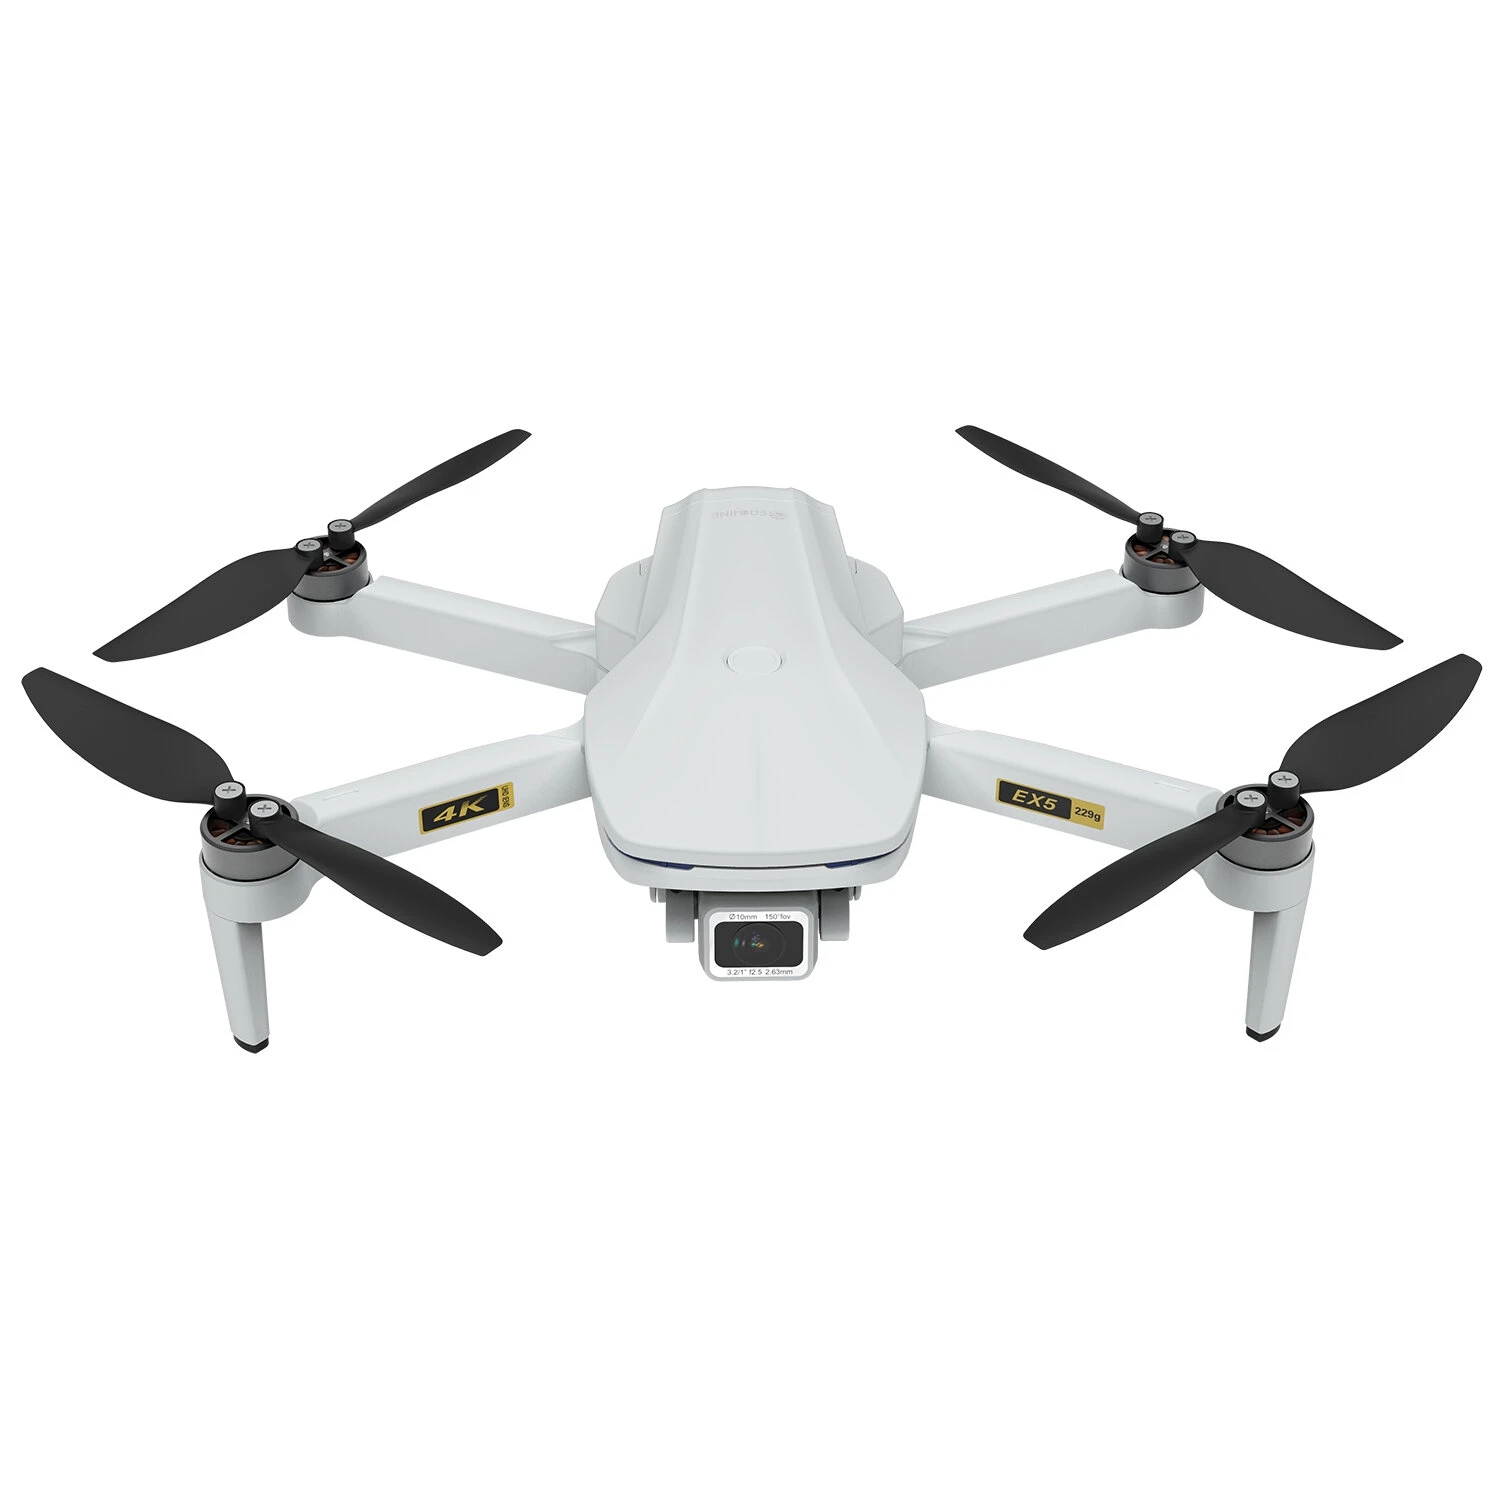 EACHINE EX5 Drohne mit Kamera 4K GPS 5G WiFi 1KM FPV 60 Min Flugzeit Brushless 229g Ultraleichte Faltdrohne Verfolgermodus Automatische R/ückkehr Gestenerkennung OptischePositionierung Einstiegsdrohne